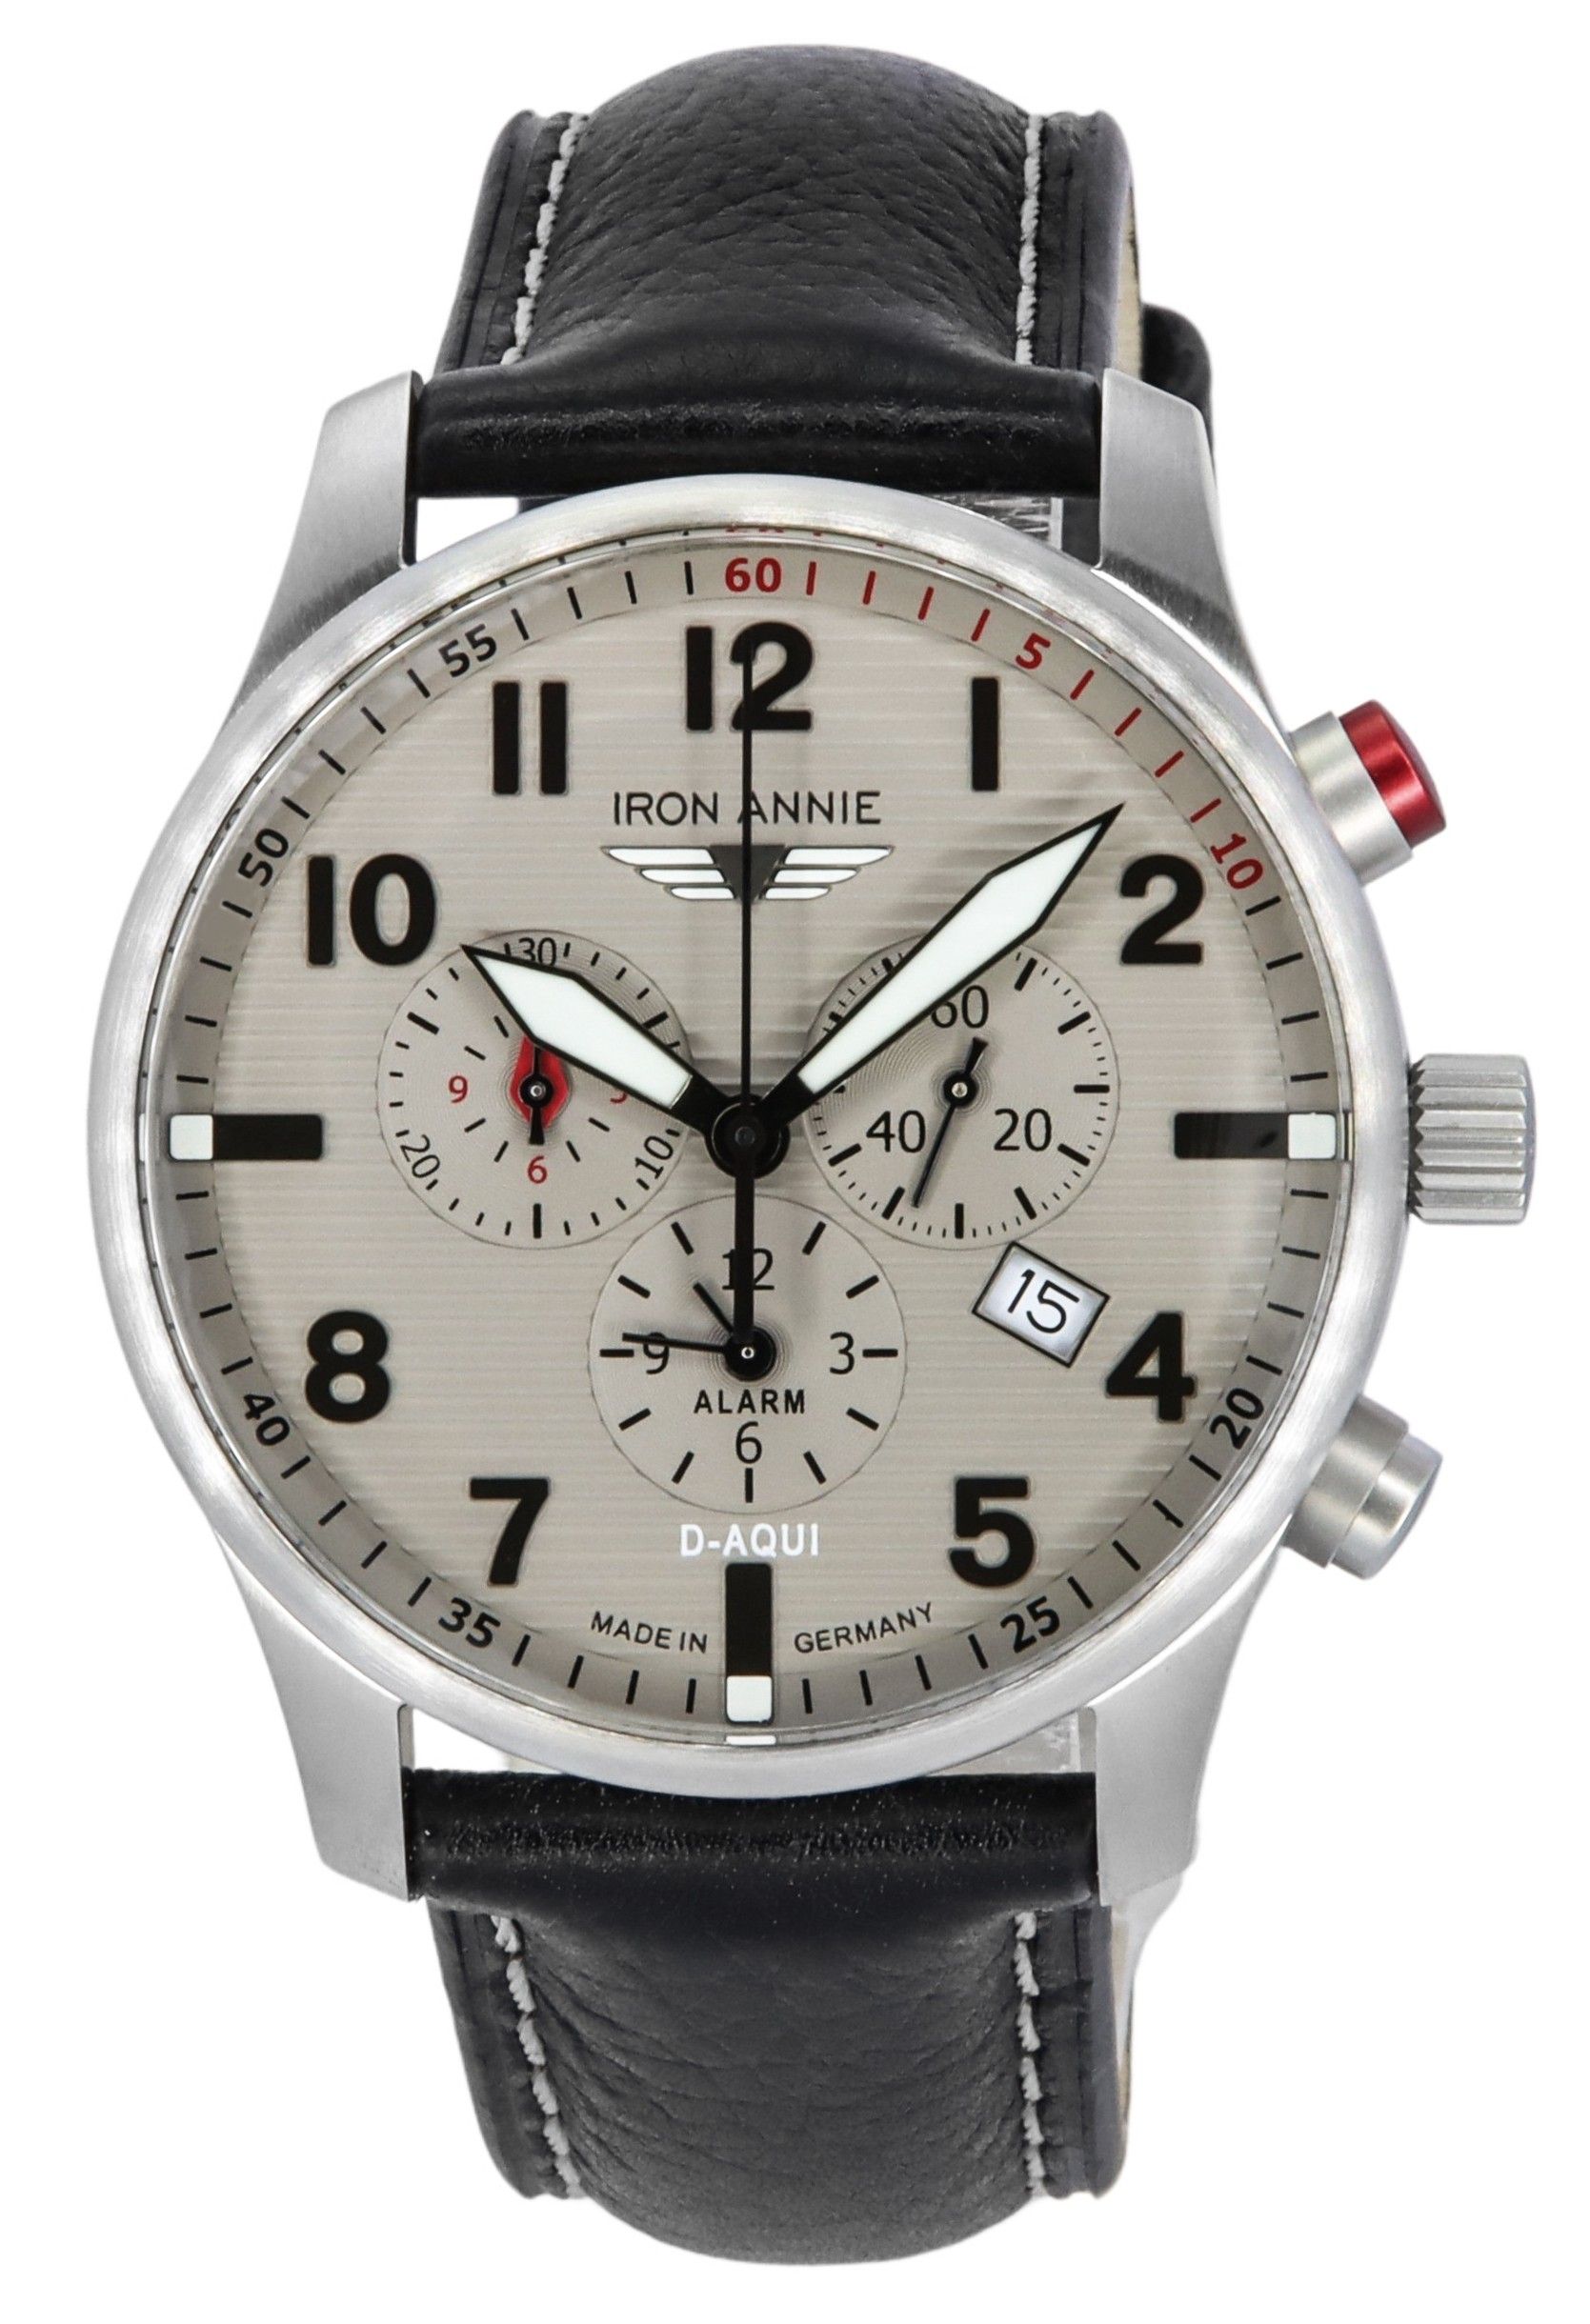 Iron Annie D-Aqui Chronograph Leather Strap Grey Dial Quartz 56844 100M Men's Watch